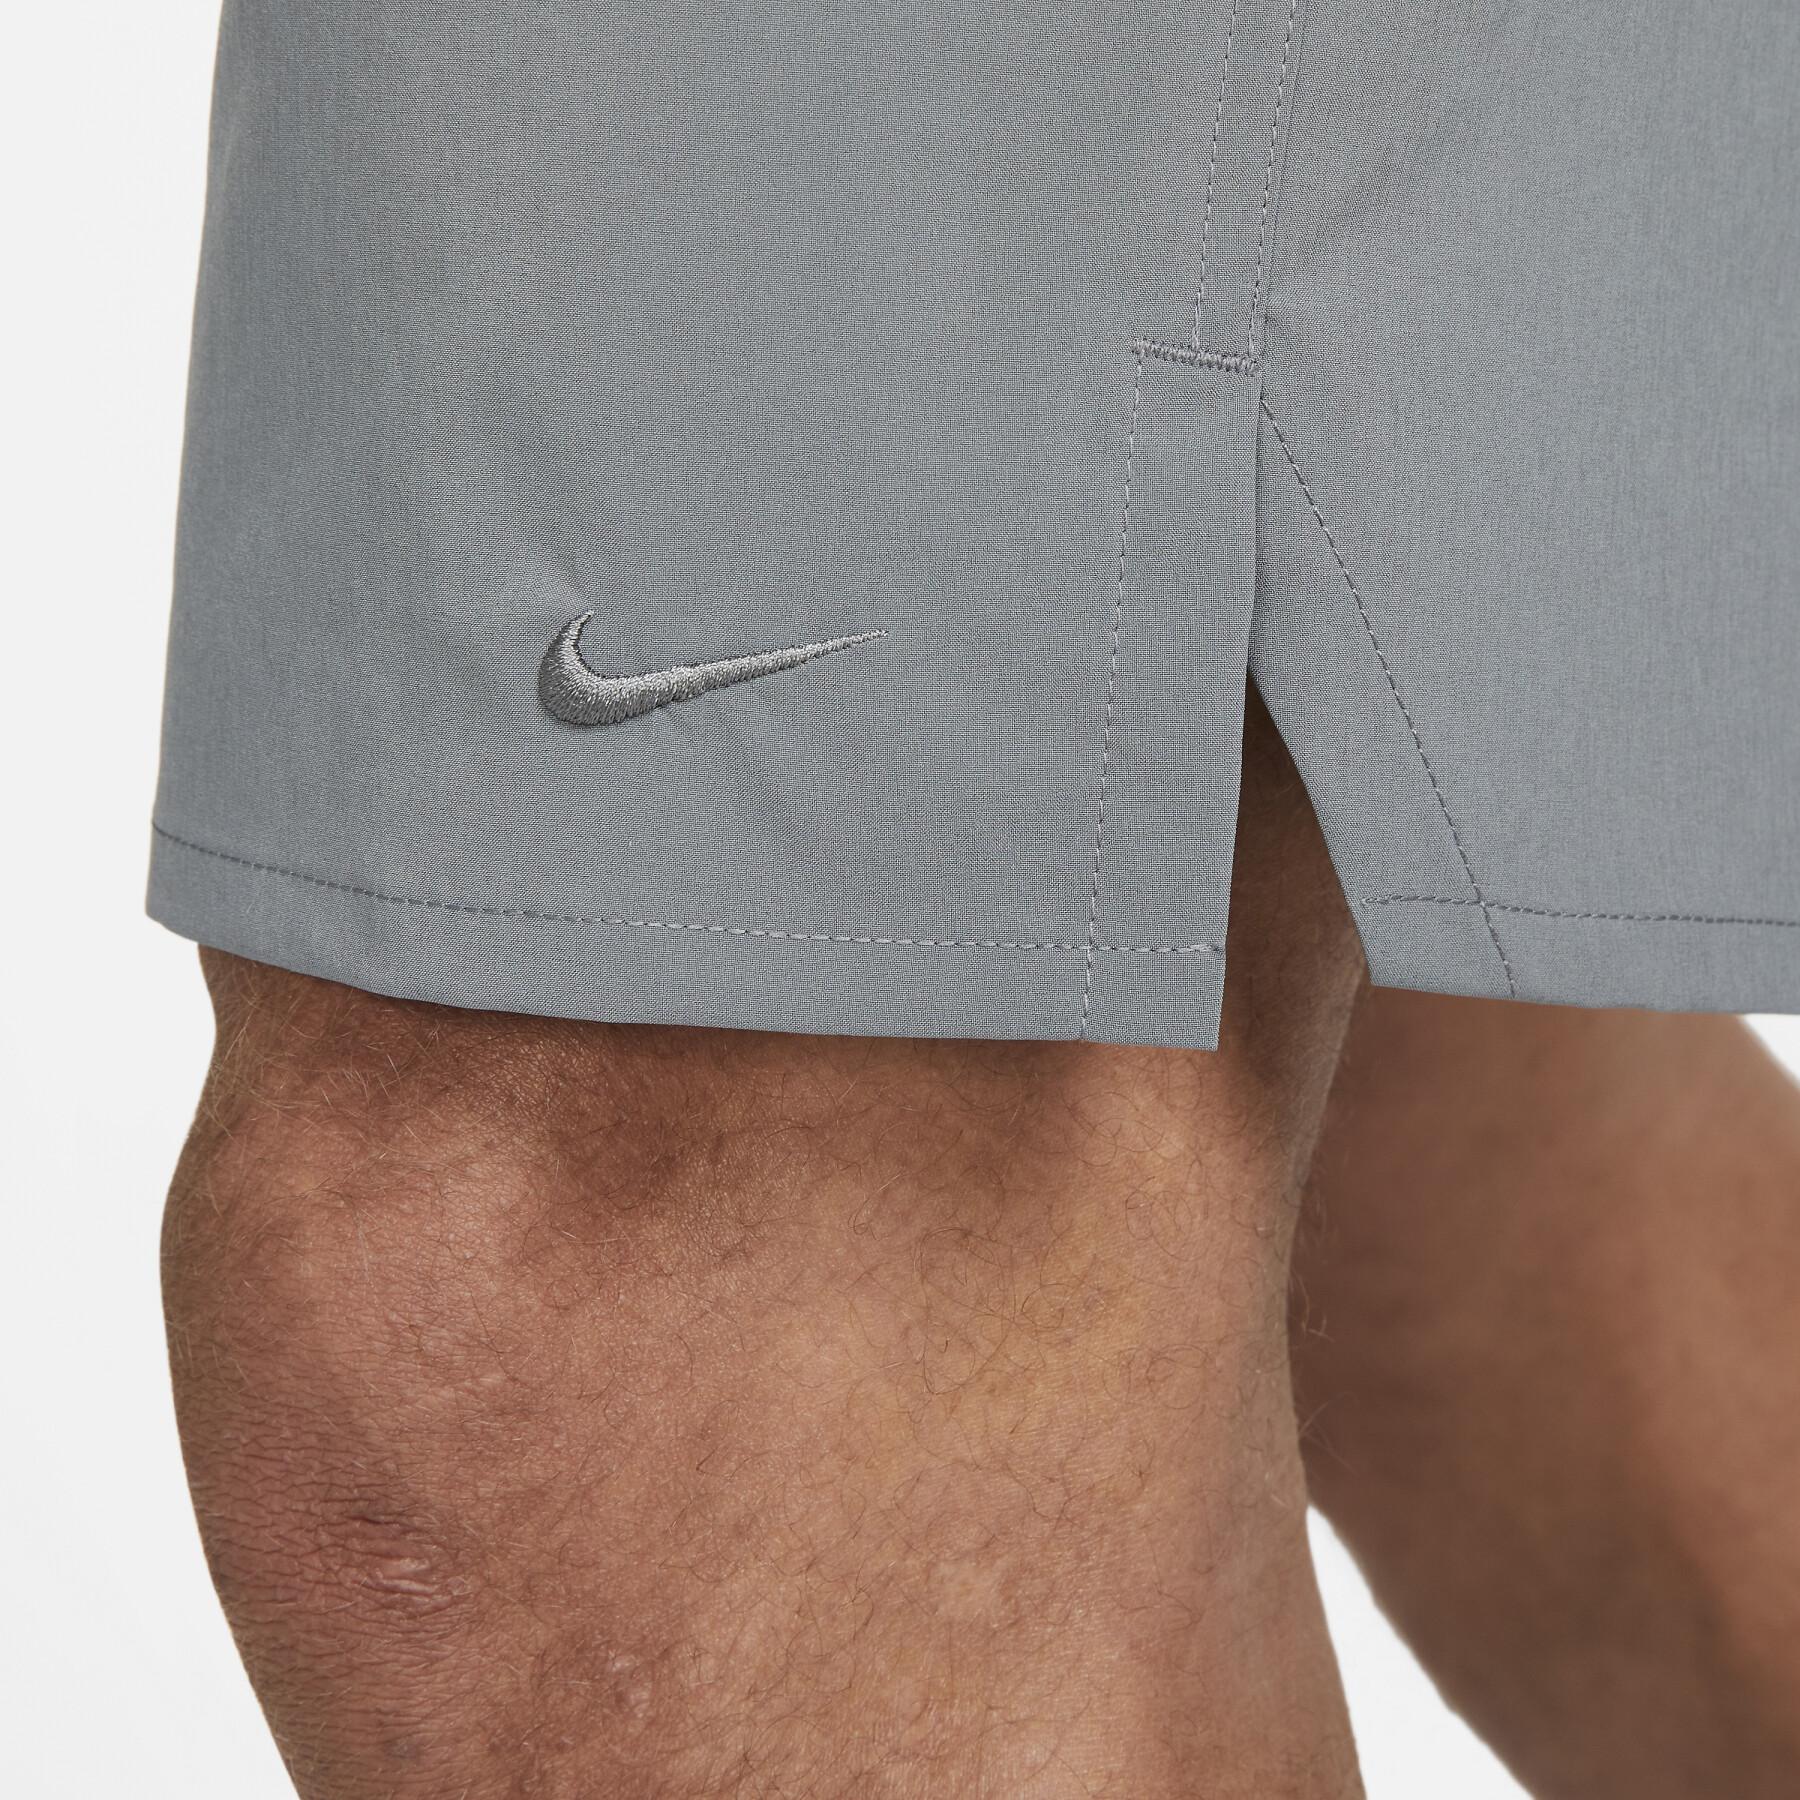 Vävda shorts Nike Dri-Fit Unlimited 9 " UL